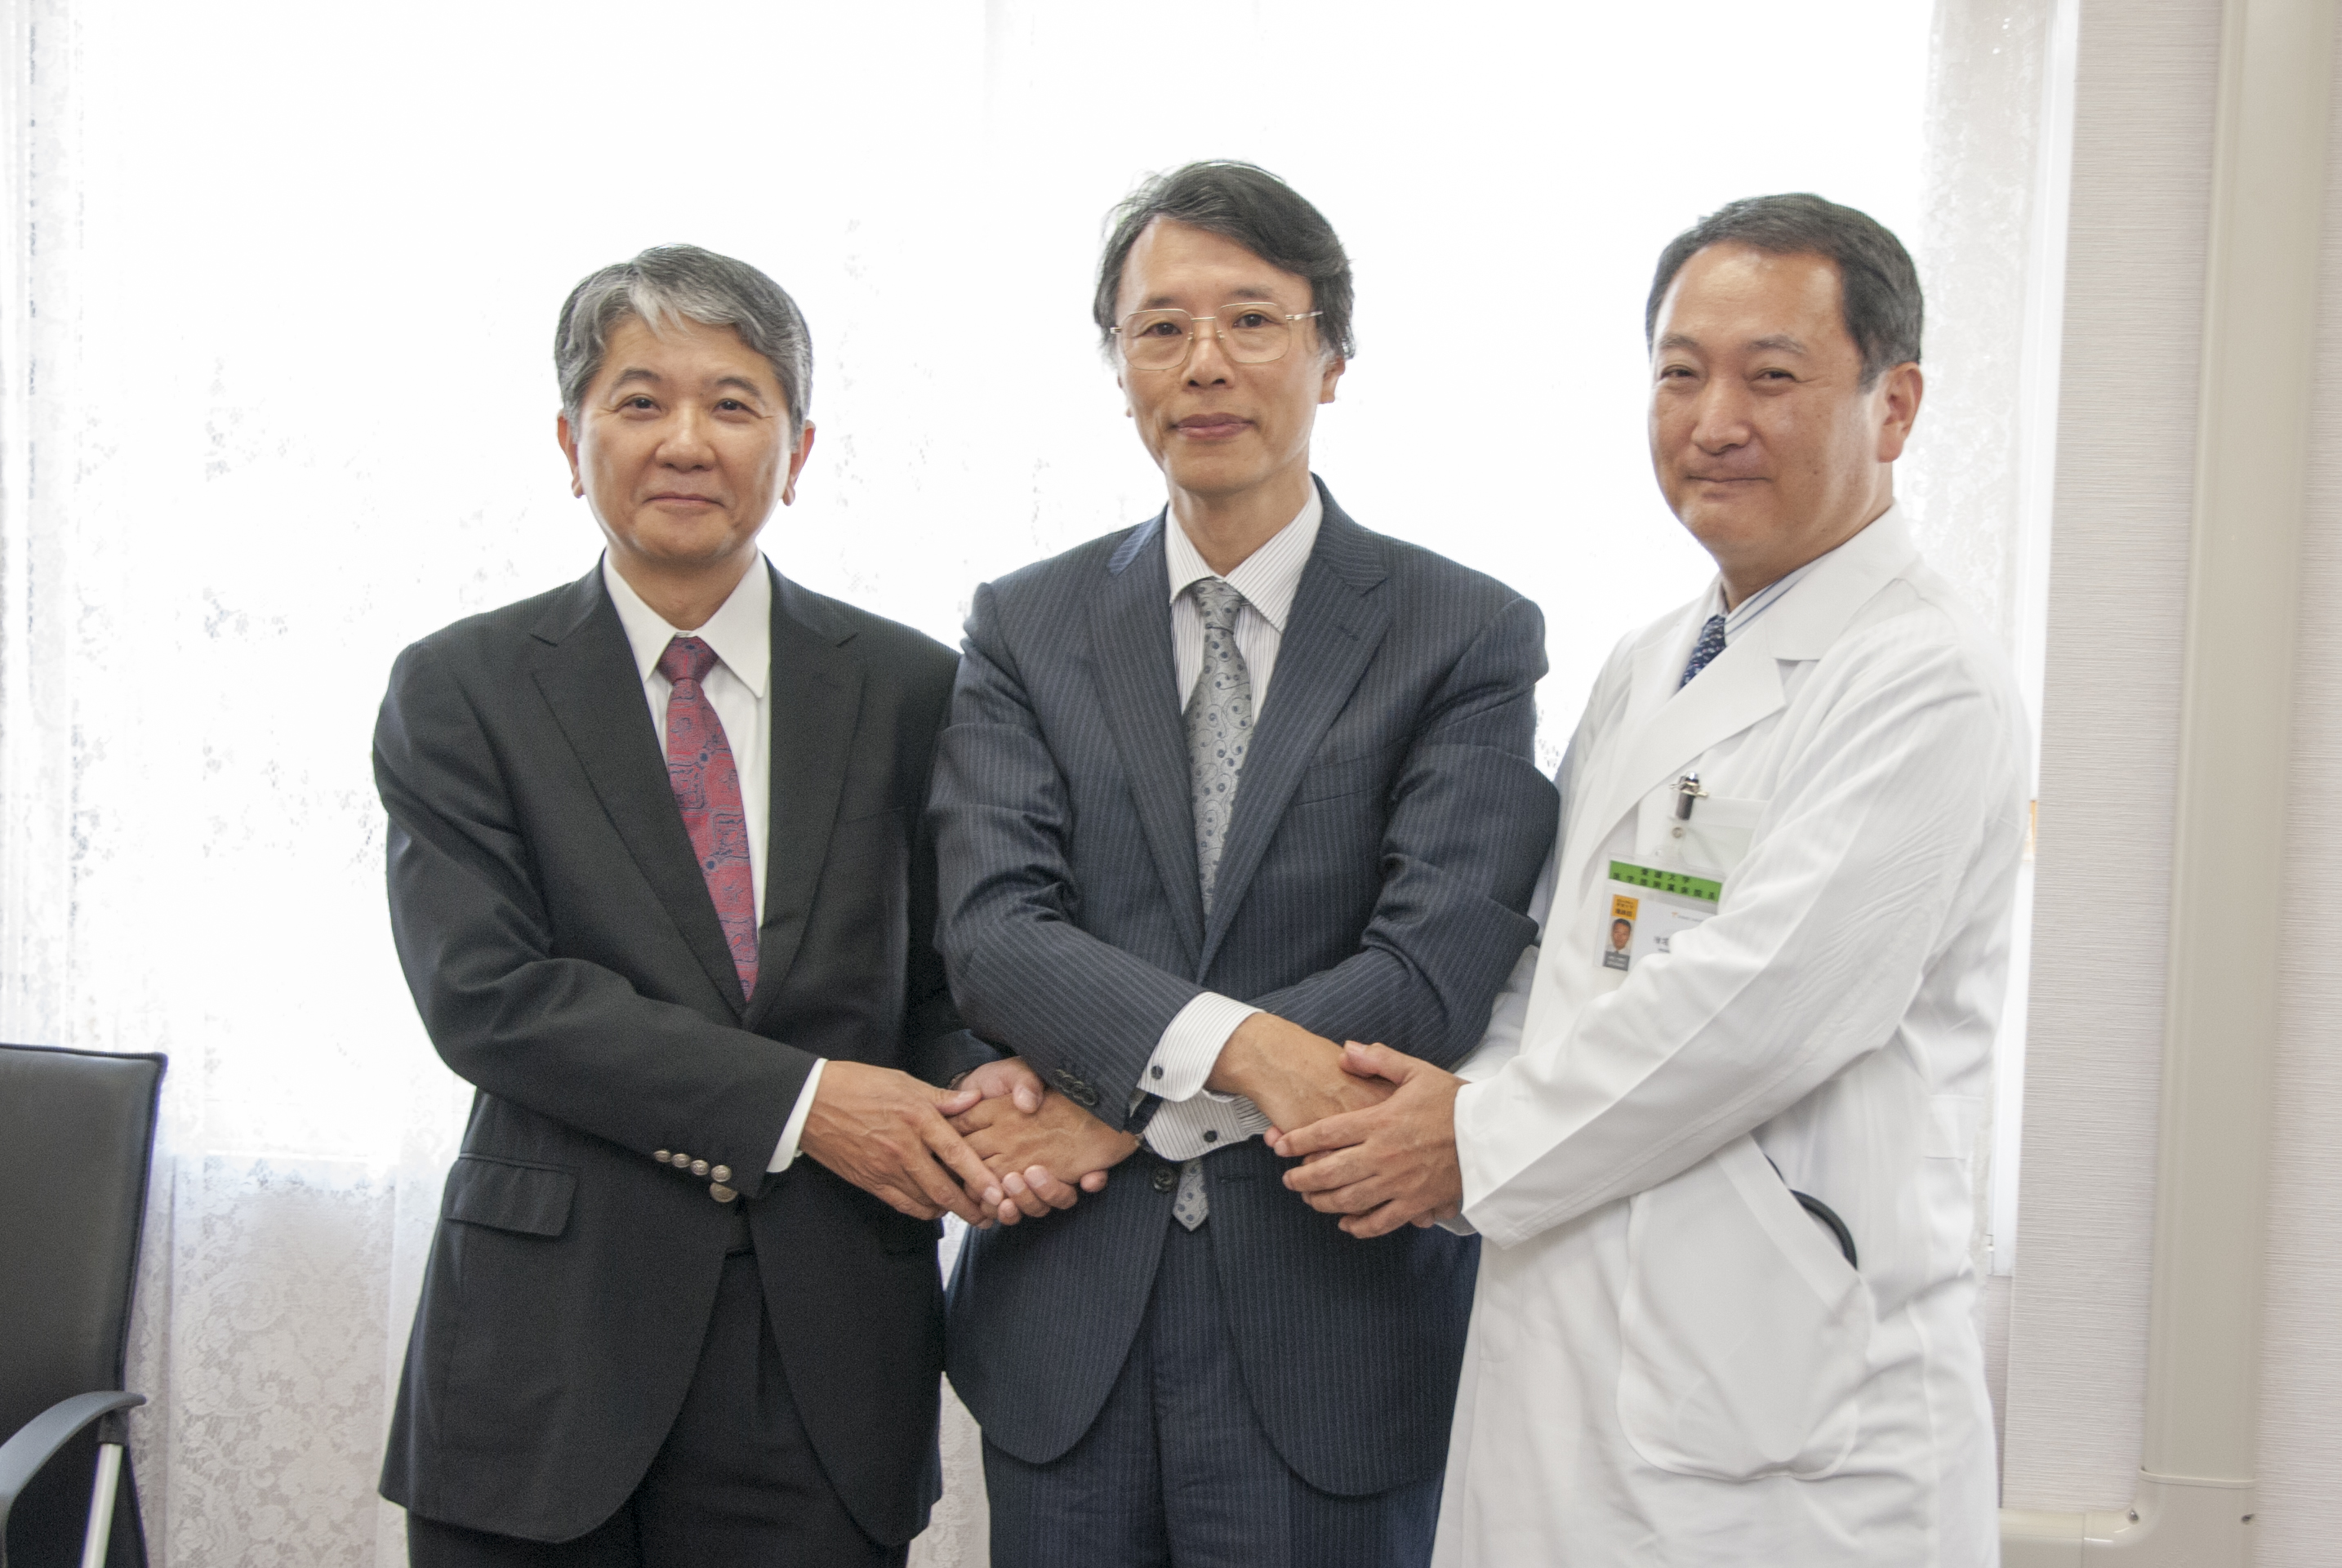 松山大学と本学の新たな段階へ向けての堅い握手